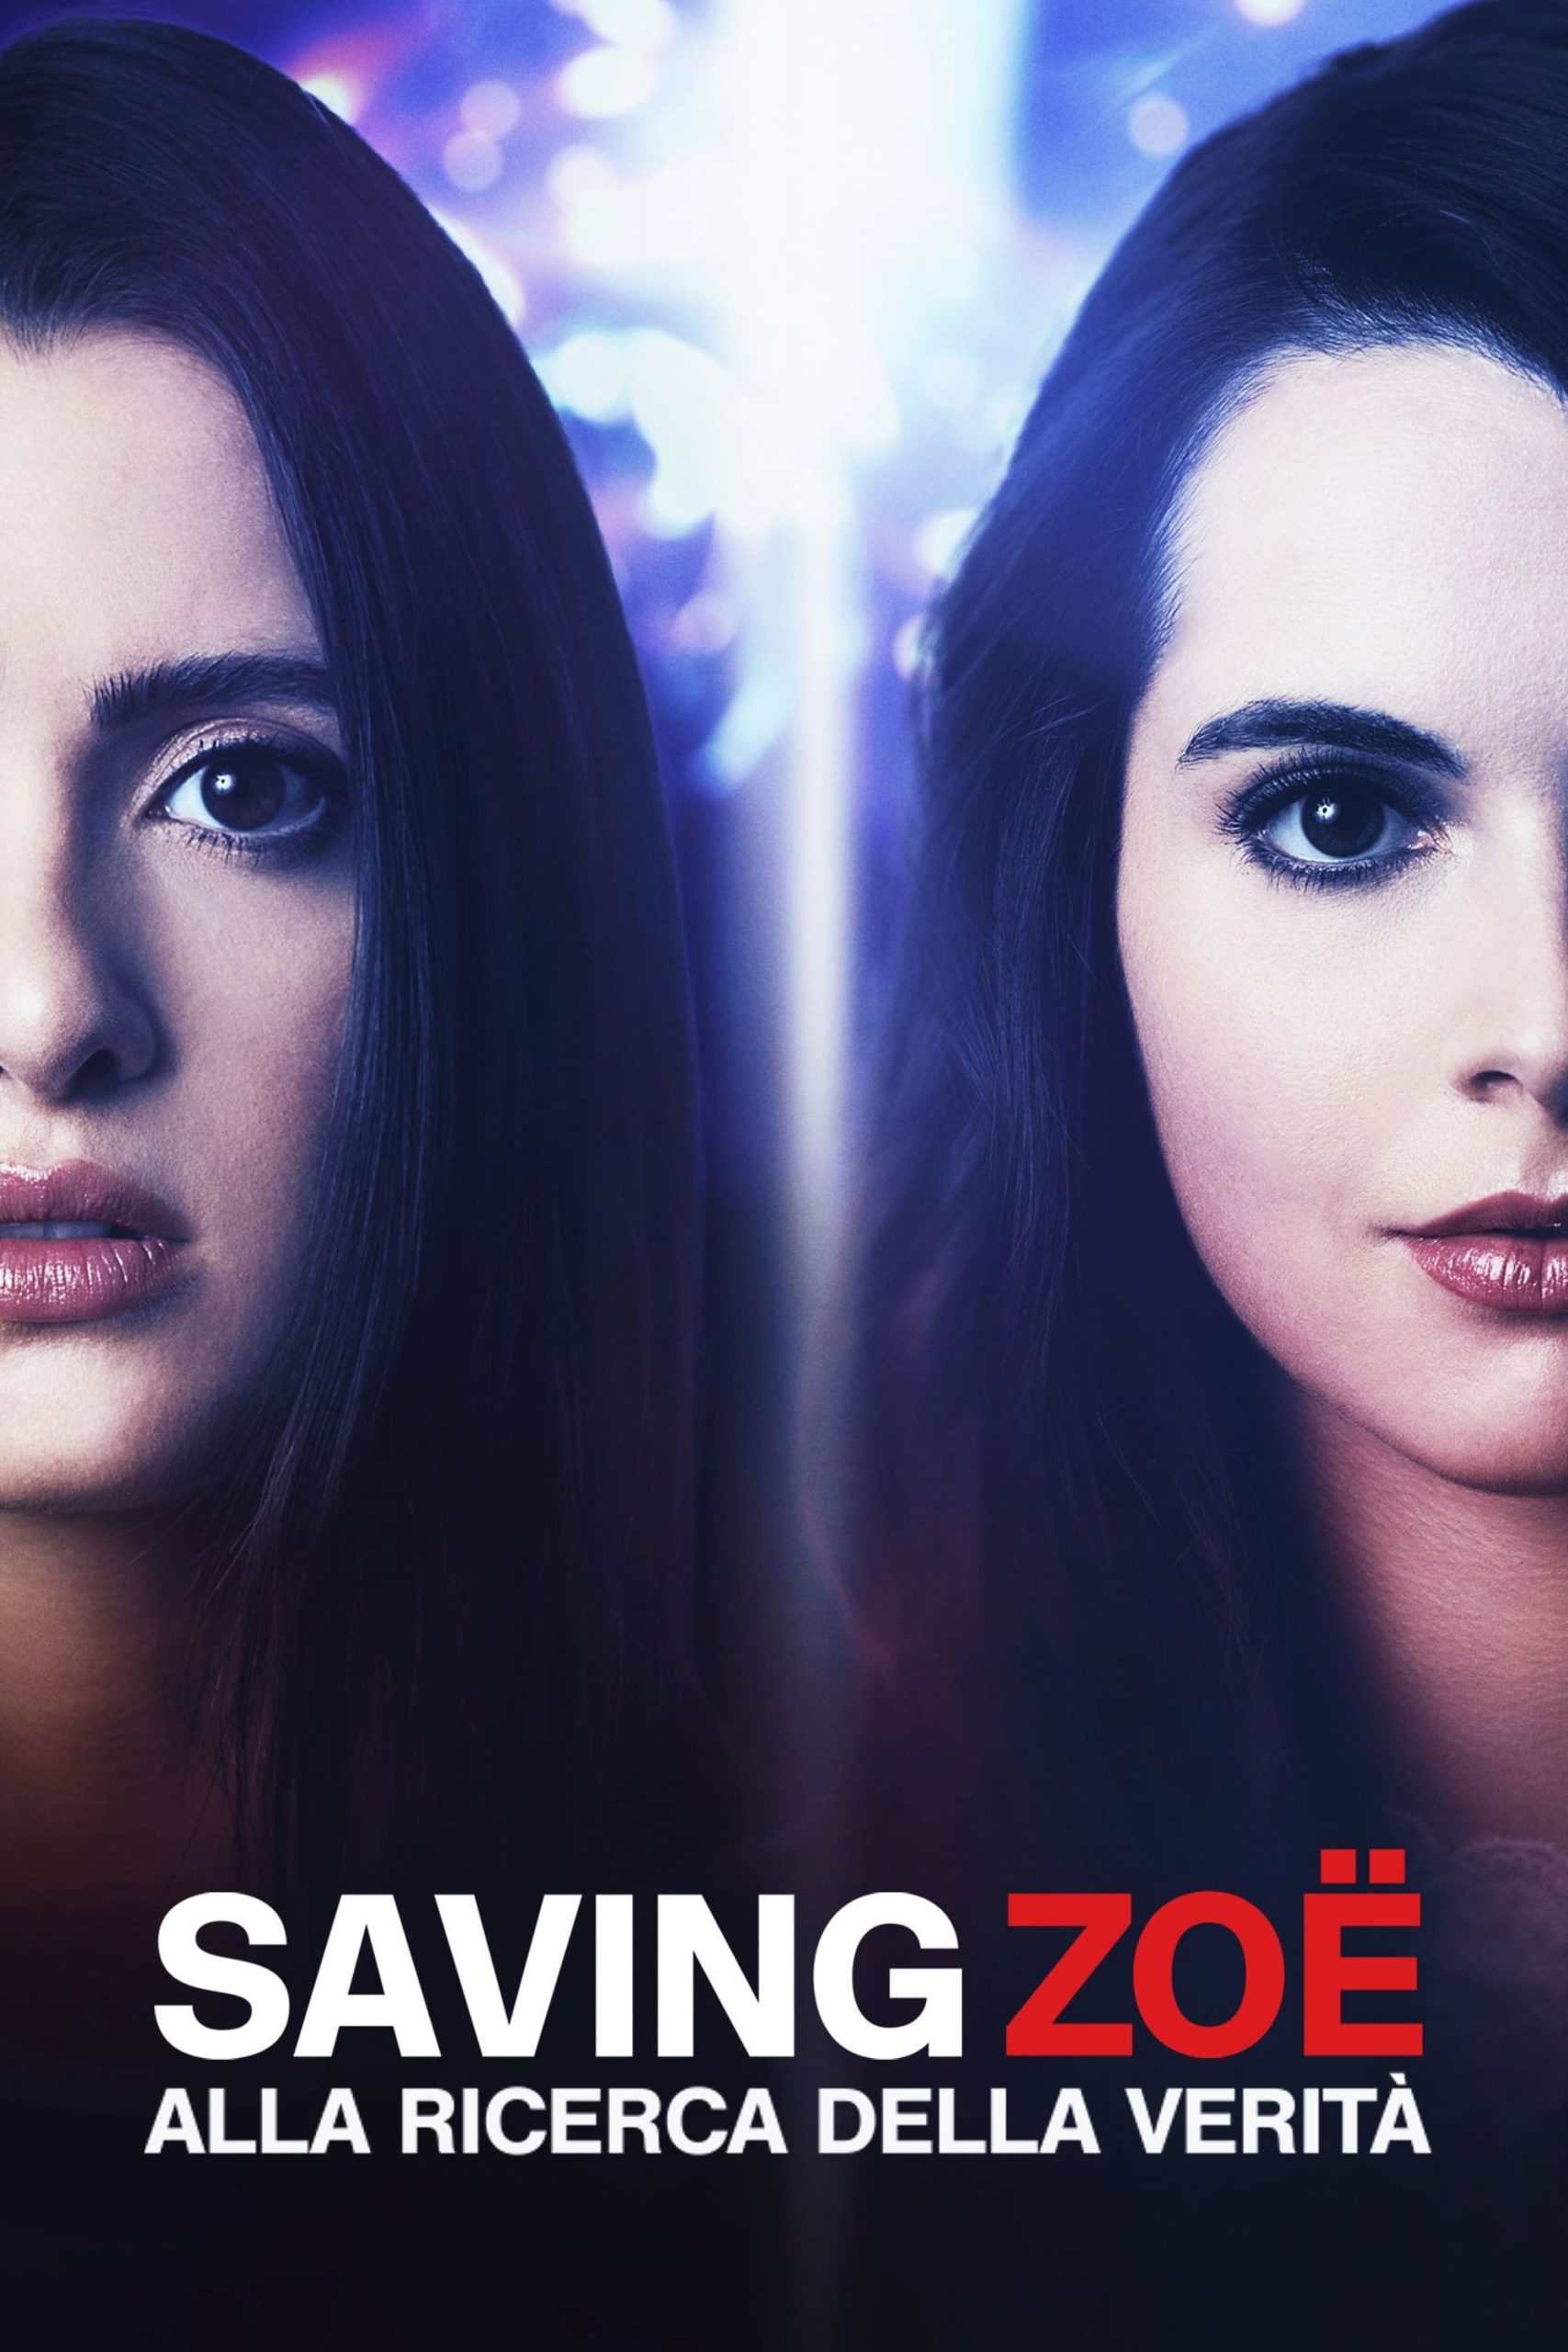 Saving Zoë – Alla ricerca della verità [HD] (2019)